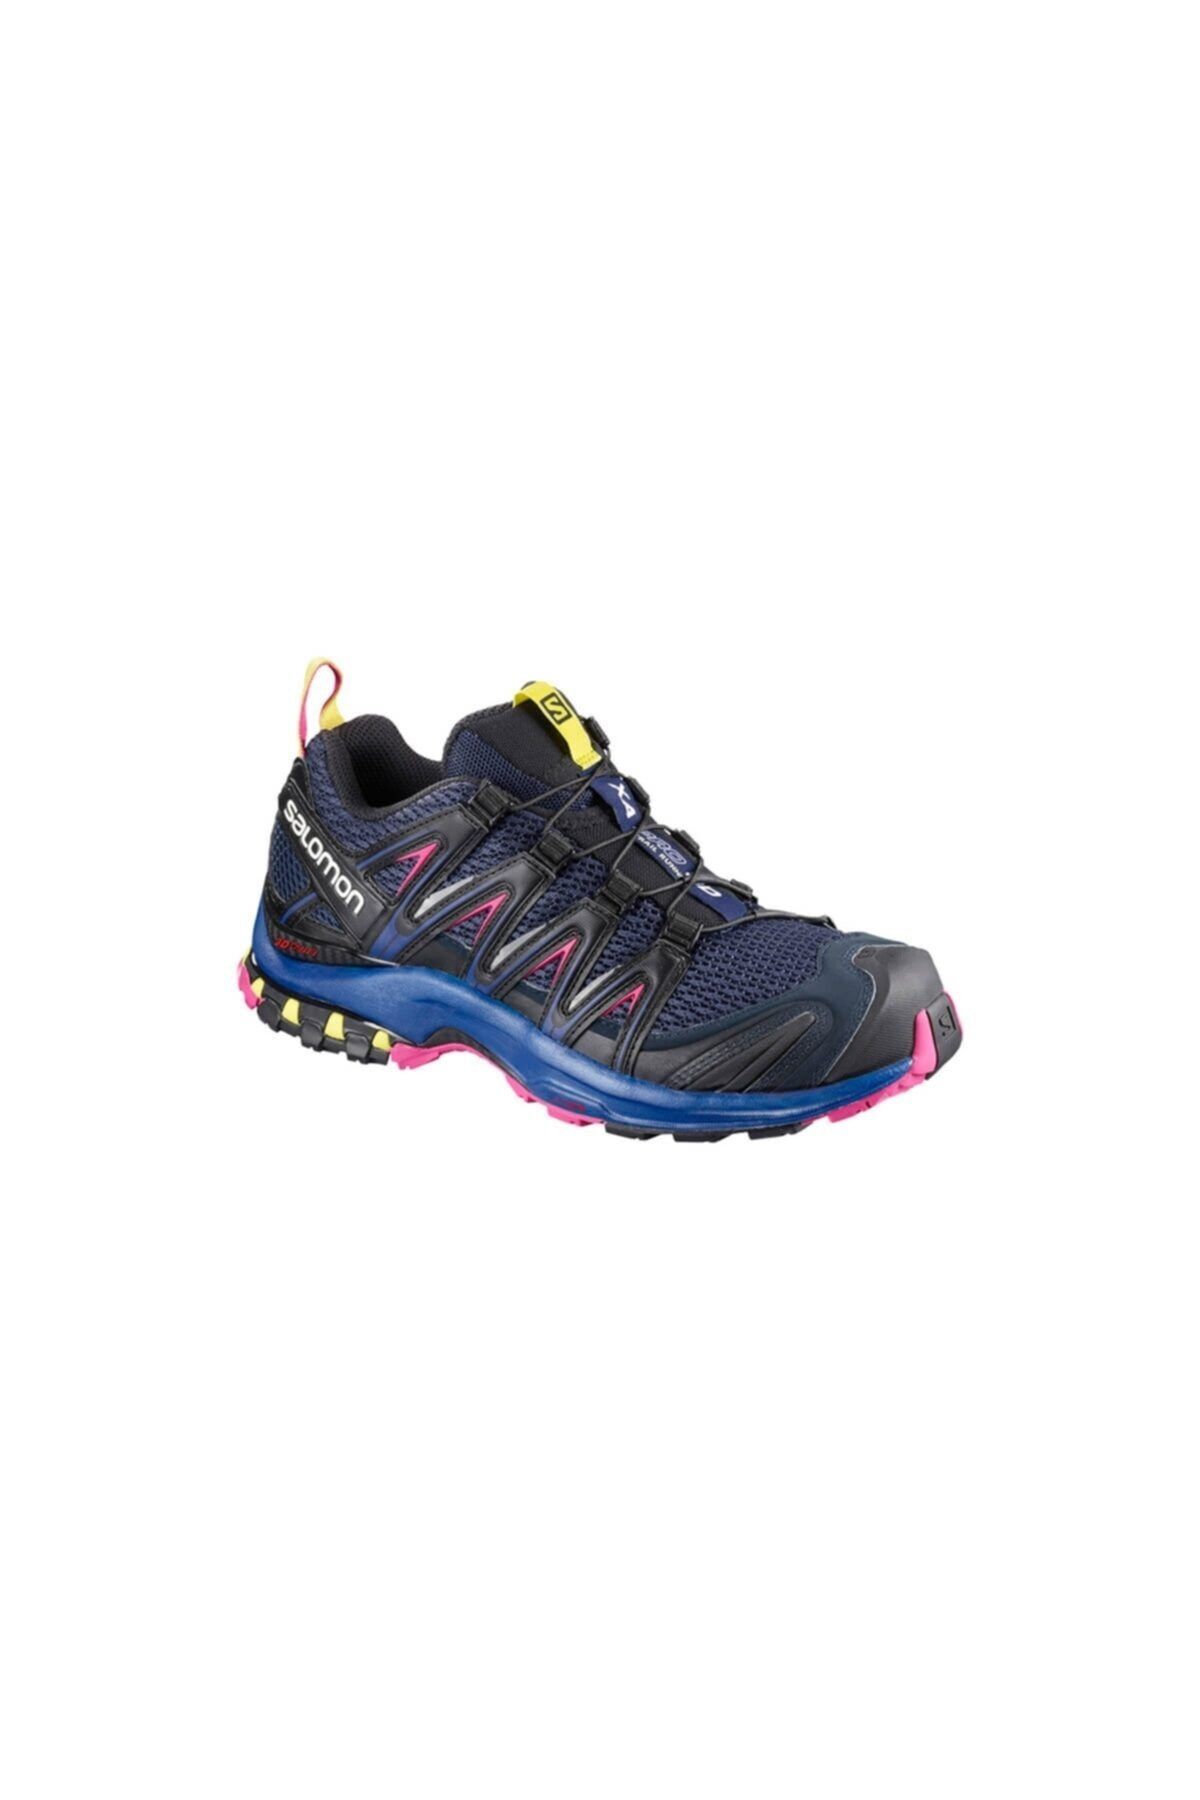 Salomon Xa Pro 3d Çok Renkli Kadın Tracking Ayakkabısı 100391290